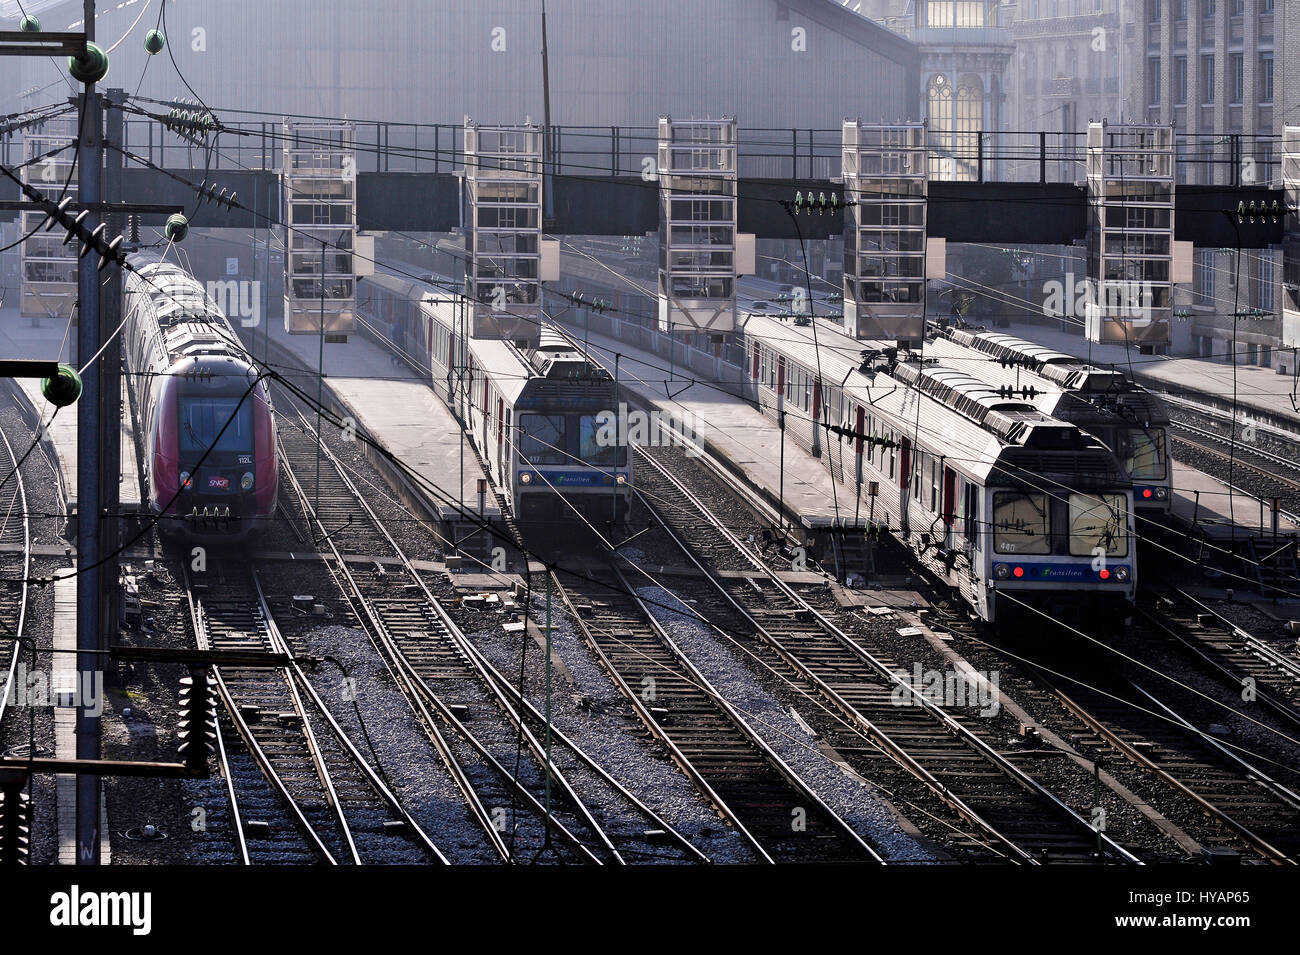 Centro ferroviario de la estación Gare du Nord, Paris, Francia Foto de stock